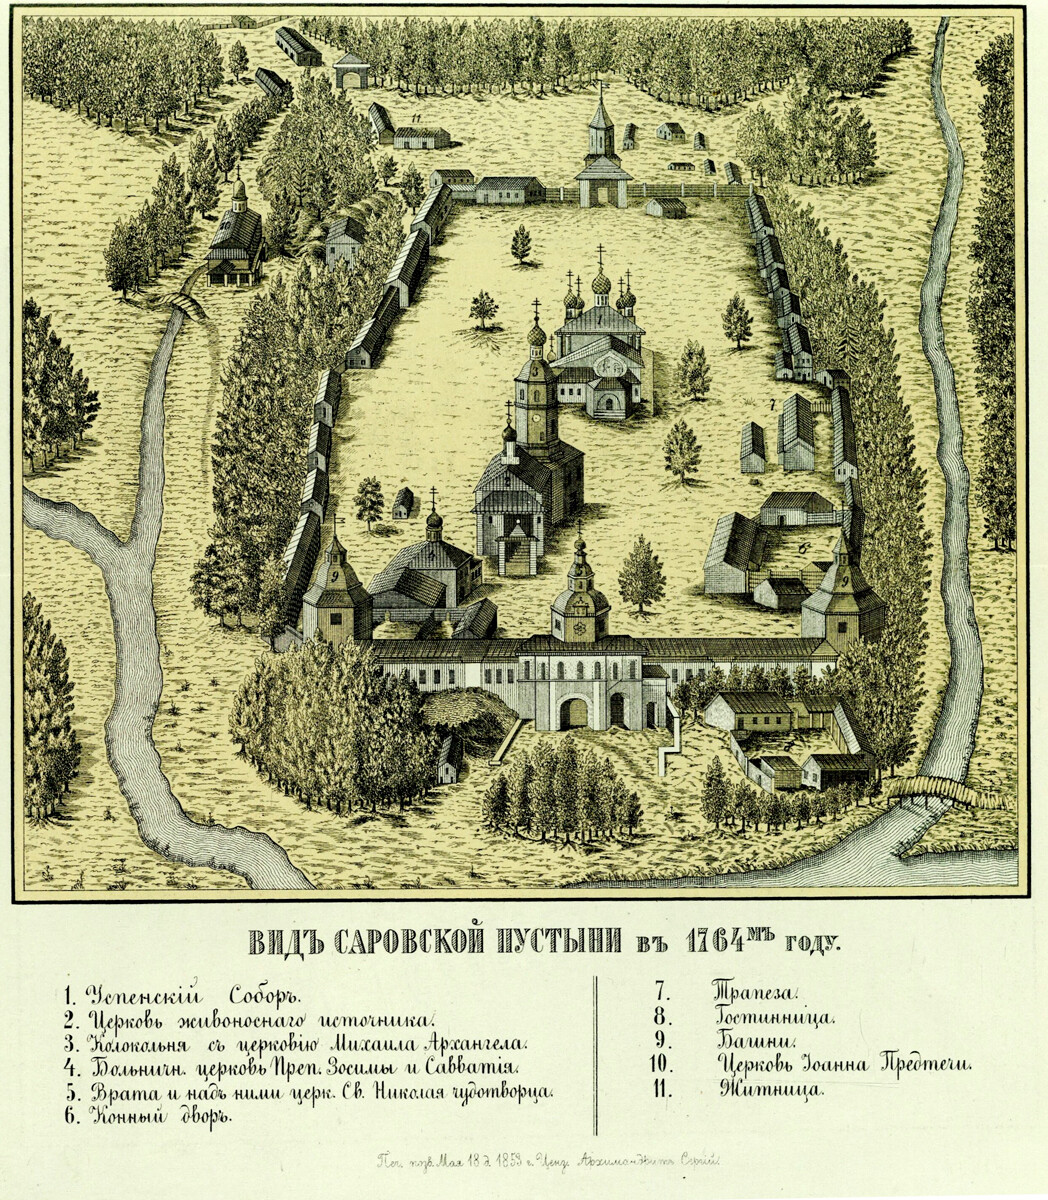 Sarov. Vista general del monasterio en la antigüedad (en torno a 1764). Mapa.